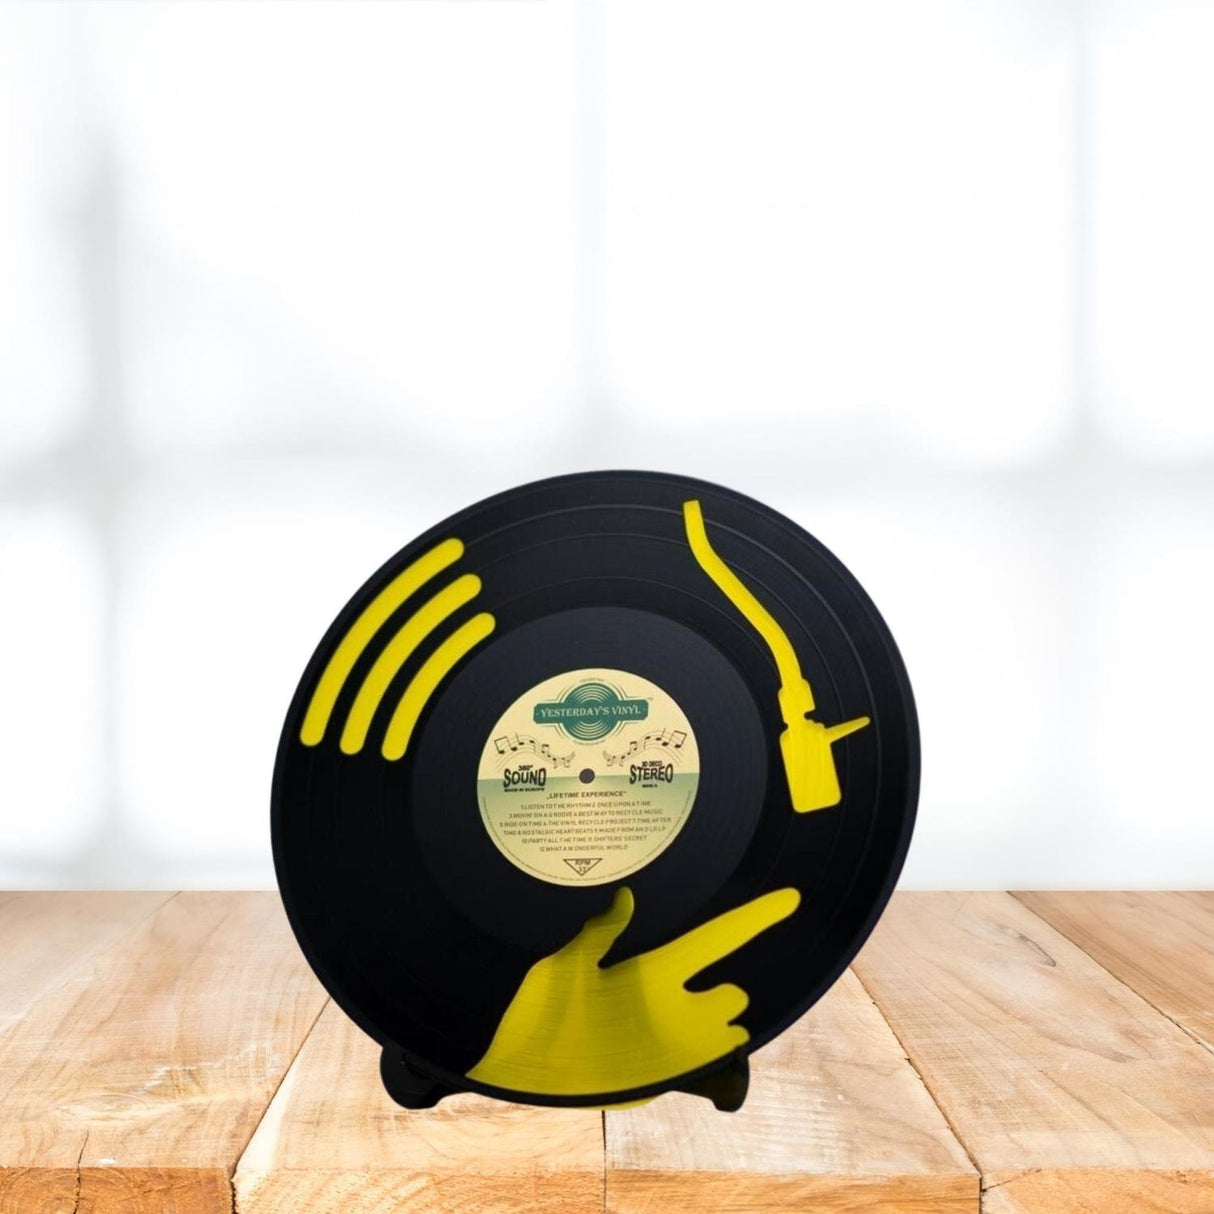 DJ Vinyl Dekoartikel aus einer echten Schallplatte in zufälliger Ausführung